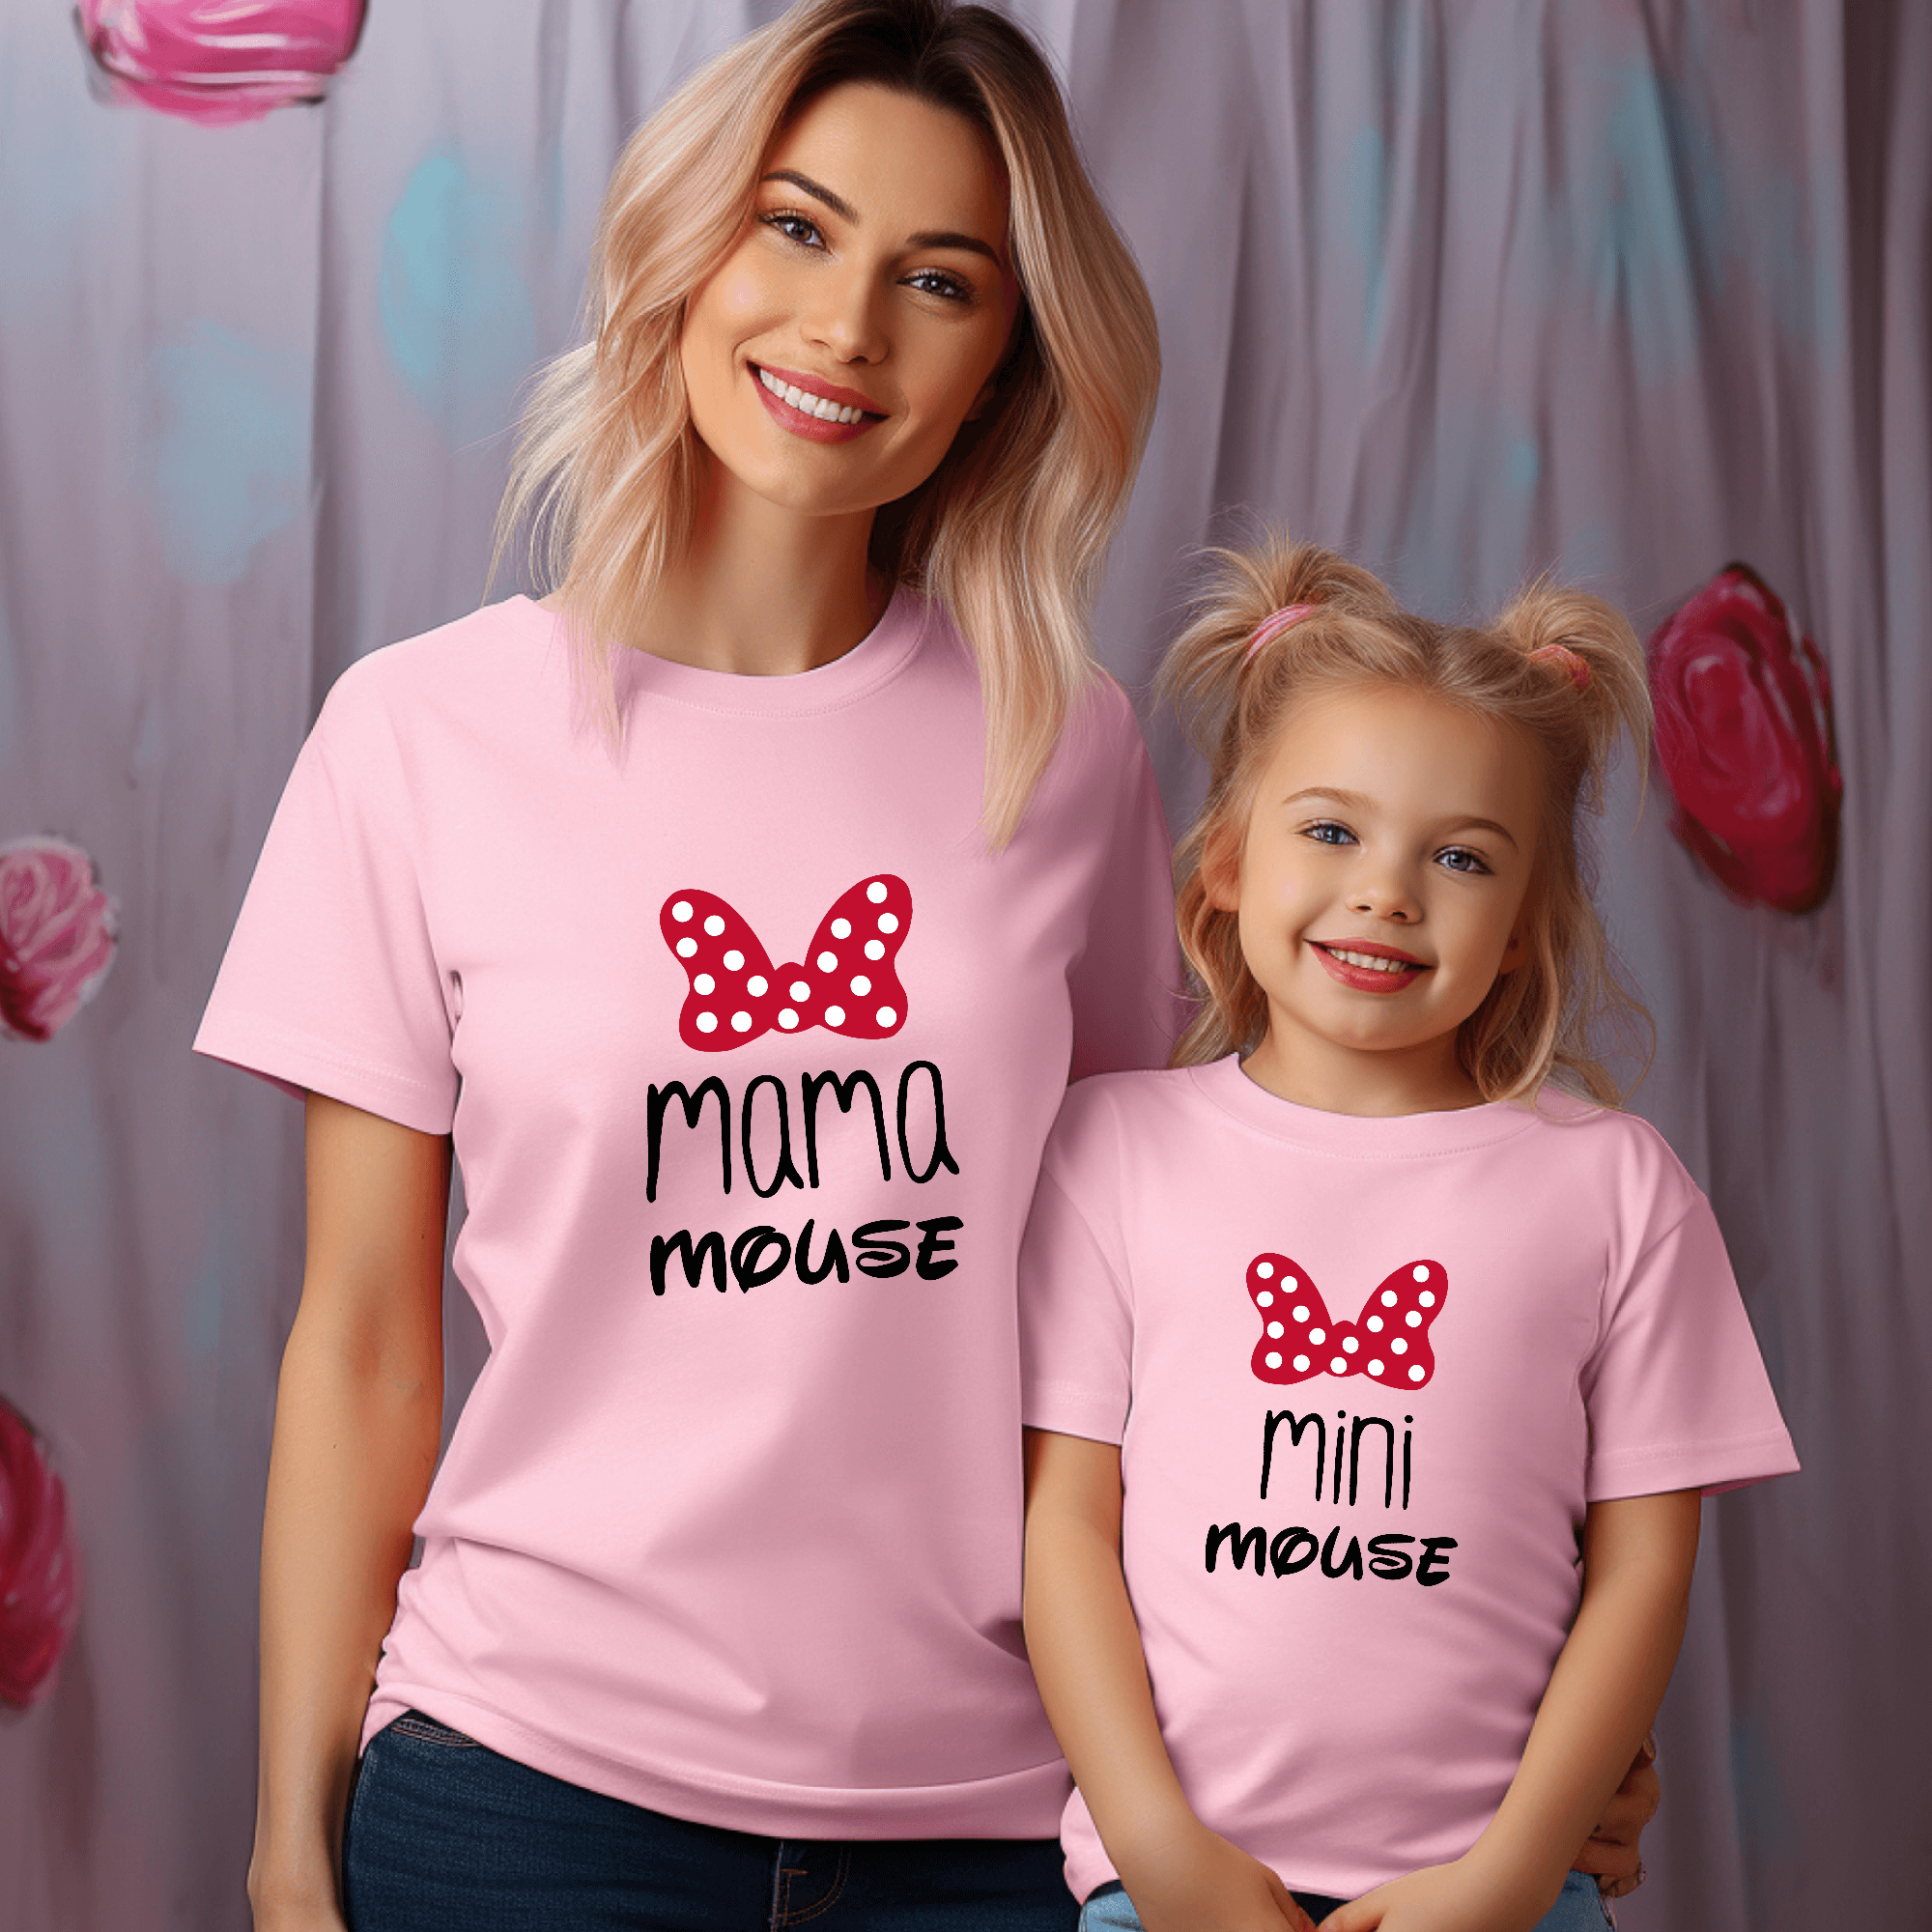 Camiseta Mama-daddy mouse mini mouse